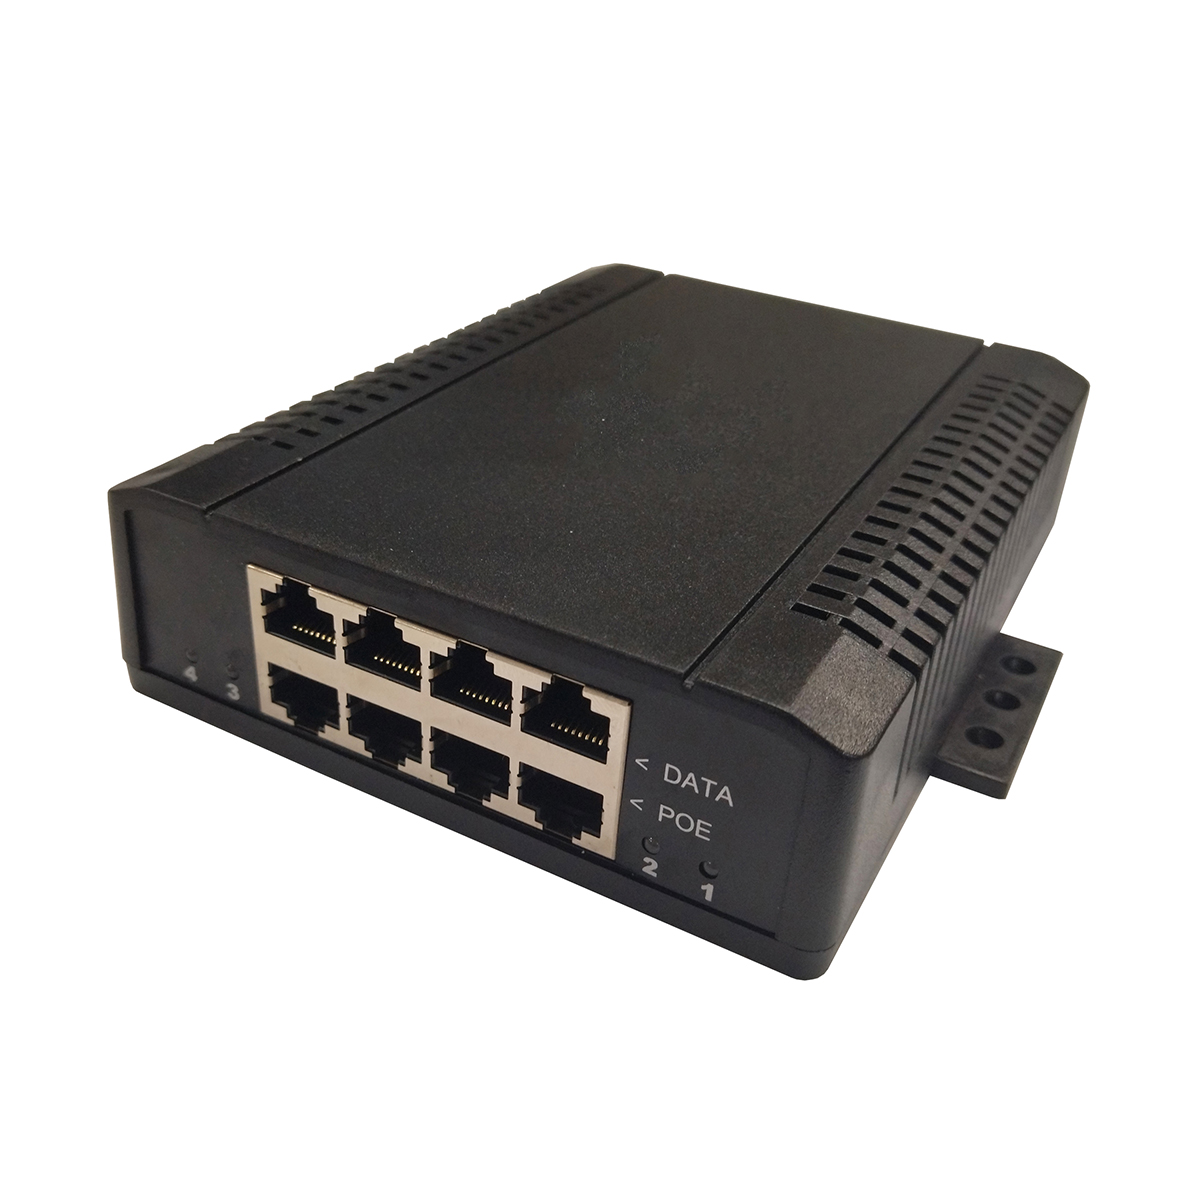 Питание через Ethernet с четырьмя портами активного инжектора с соответствии со стандартом IEEE 802.3af